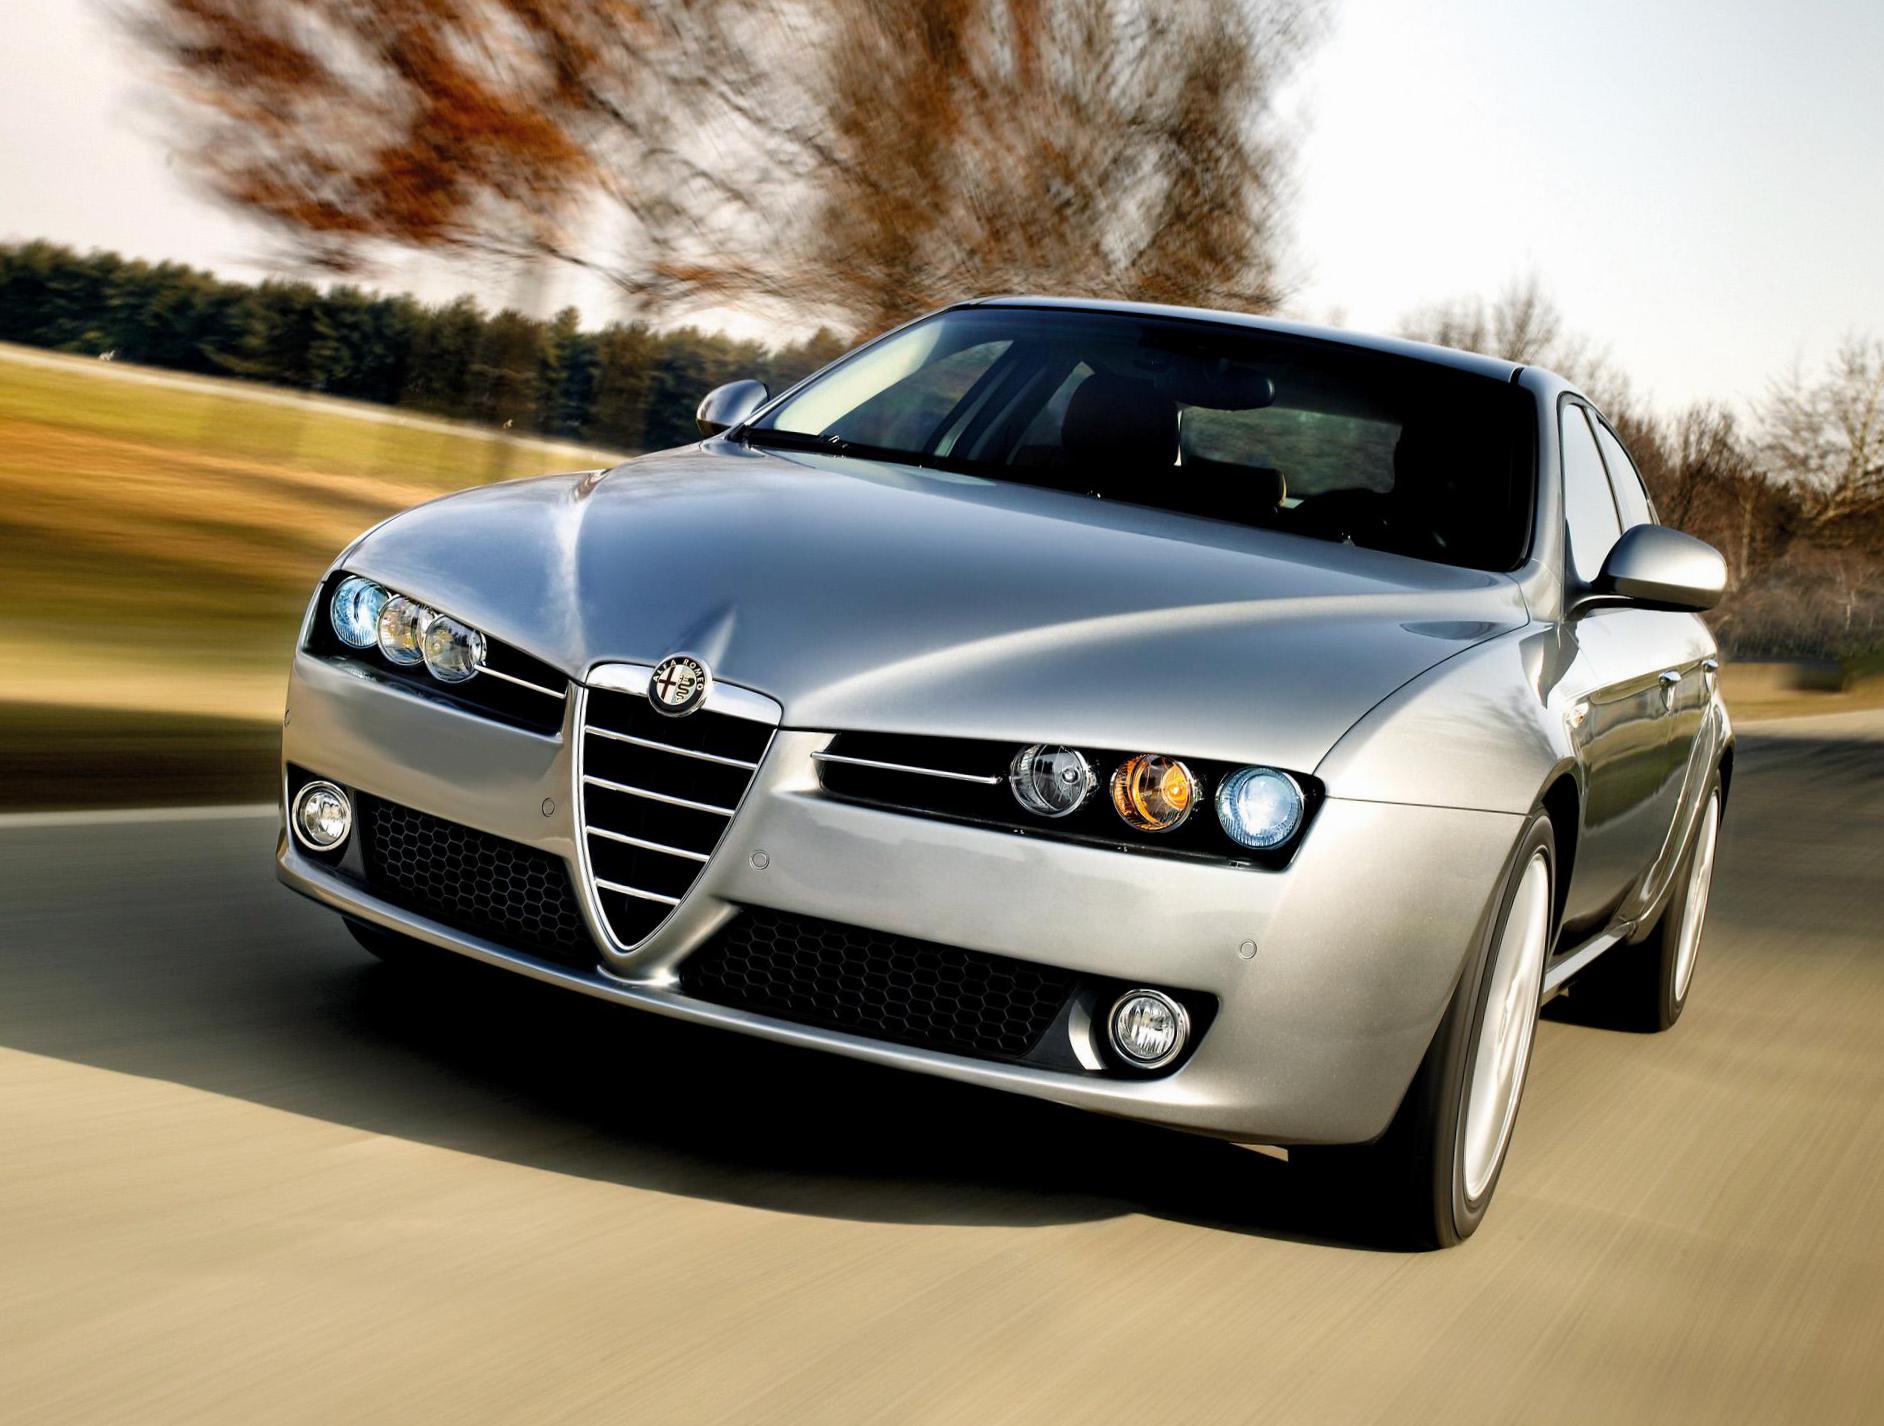 Alfa Romeo 159 review 2010